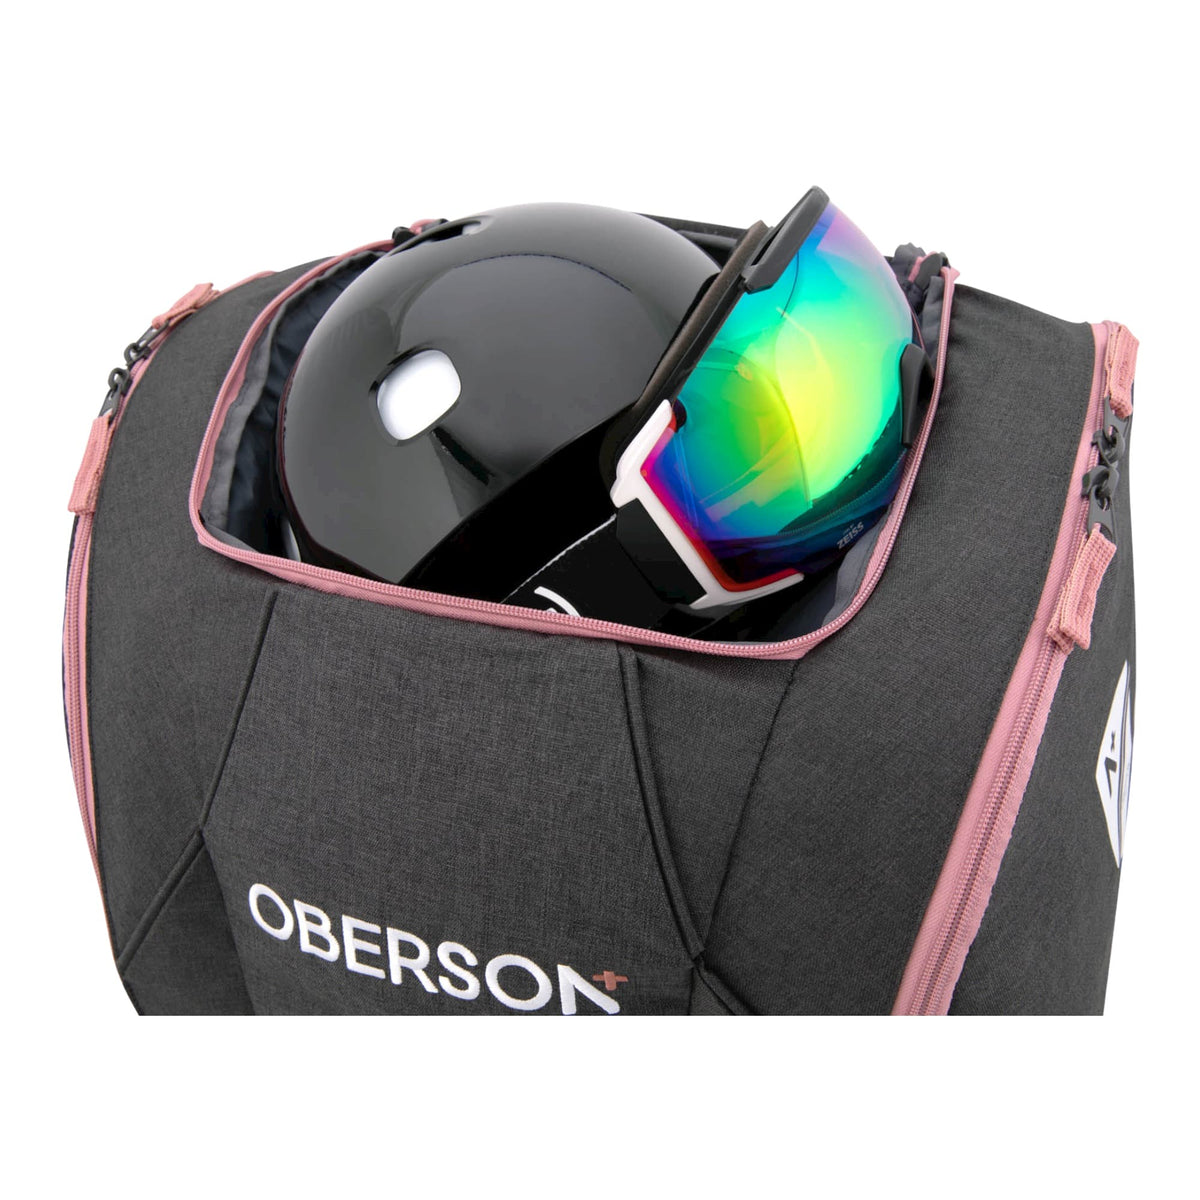 Oberson Sac Snowboard – Oberson